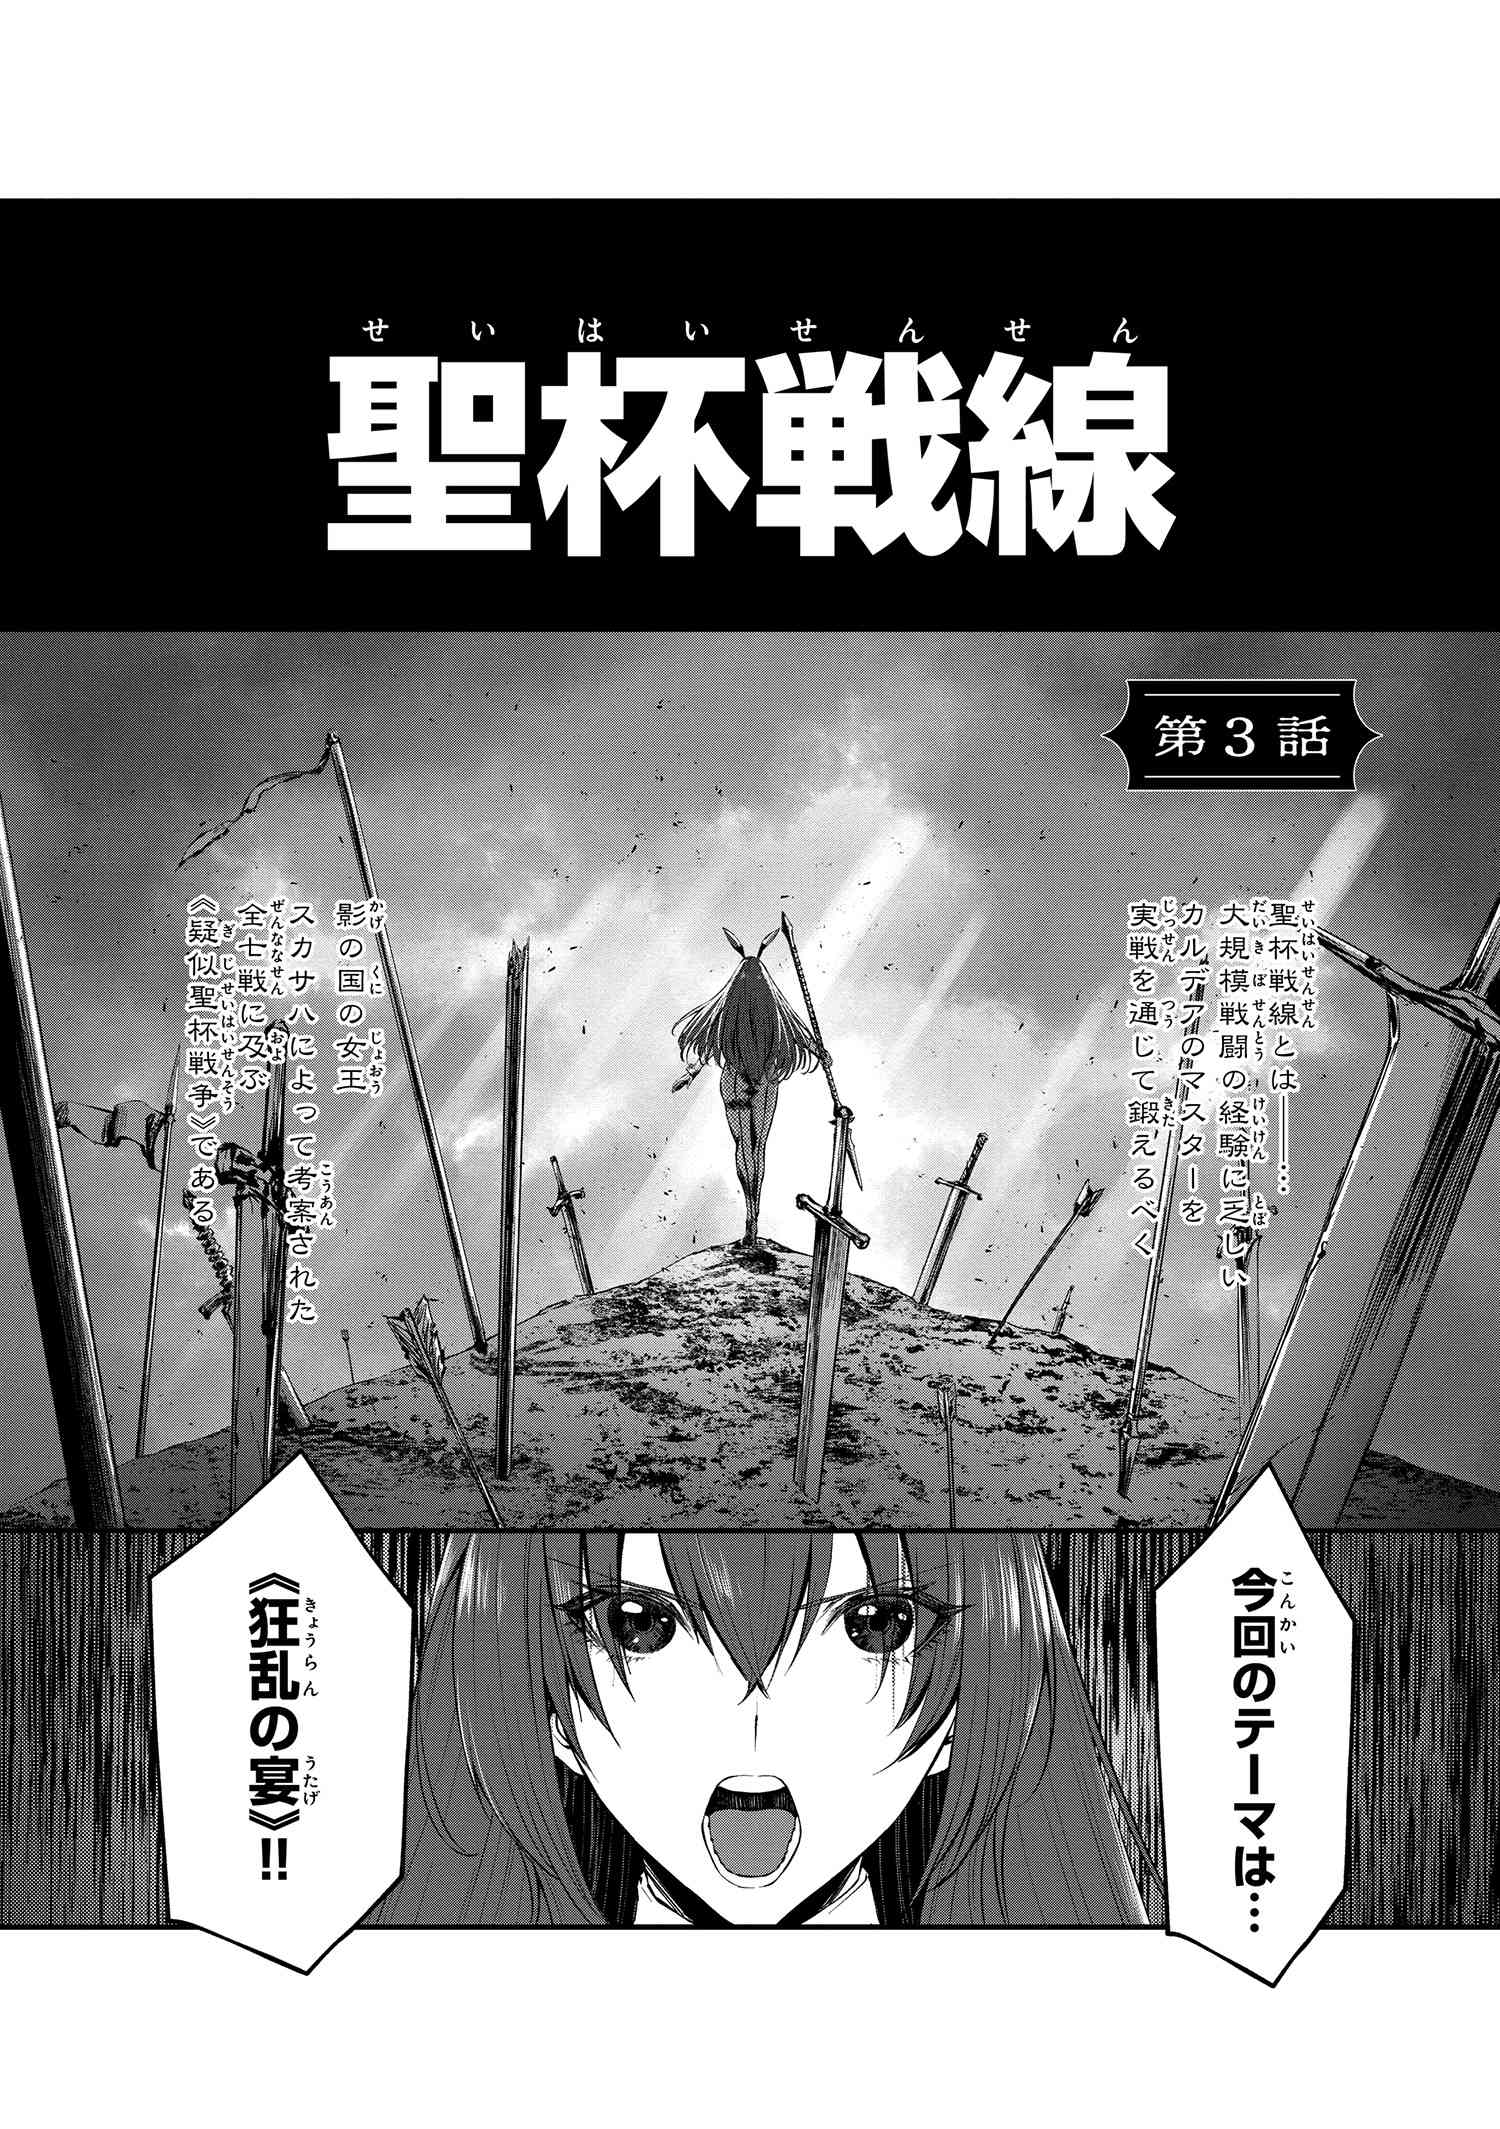 試し読み その2]Fate/Grand Order 豪華剣爛 霧月作品集 - TYPE-MOON 